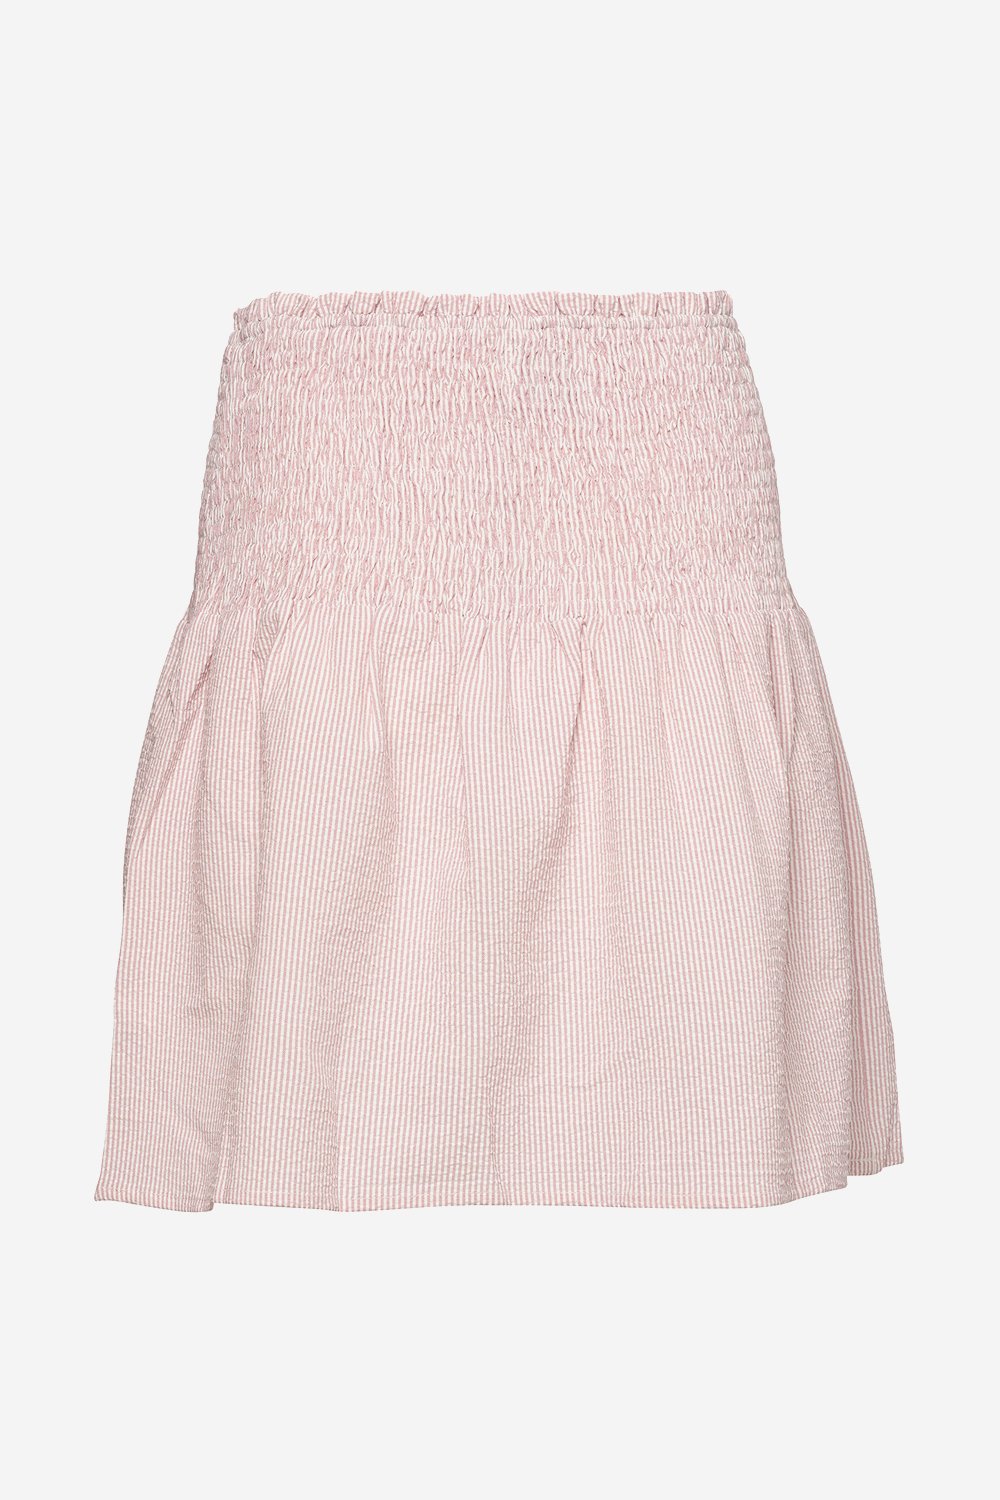 Blossom Skirt Cotton Rose Stripe